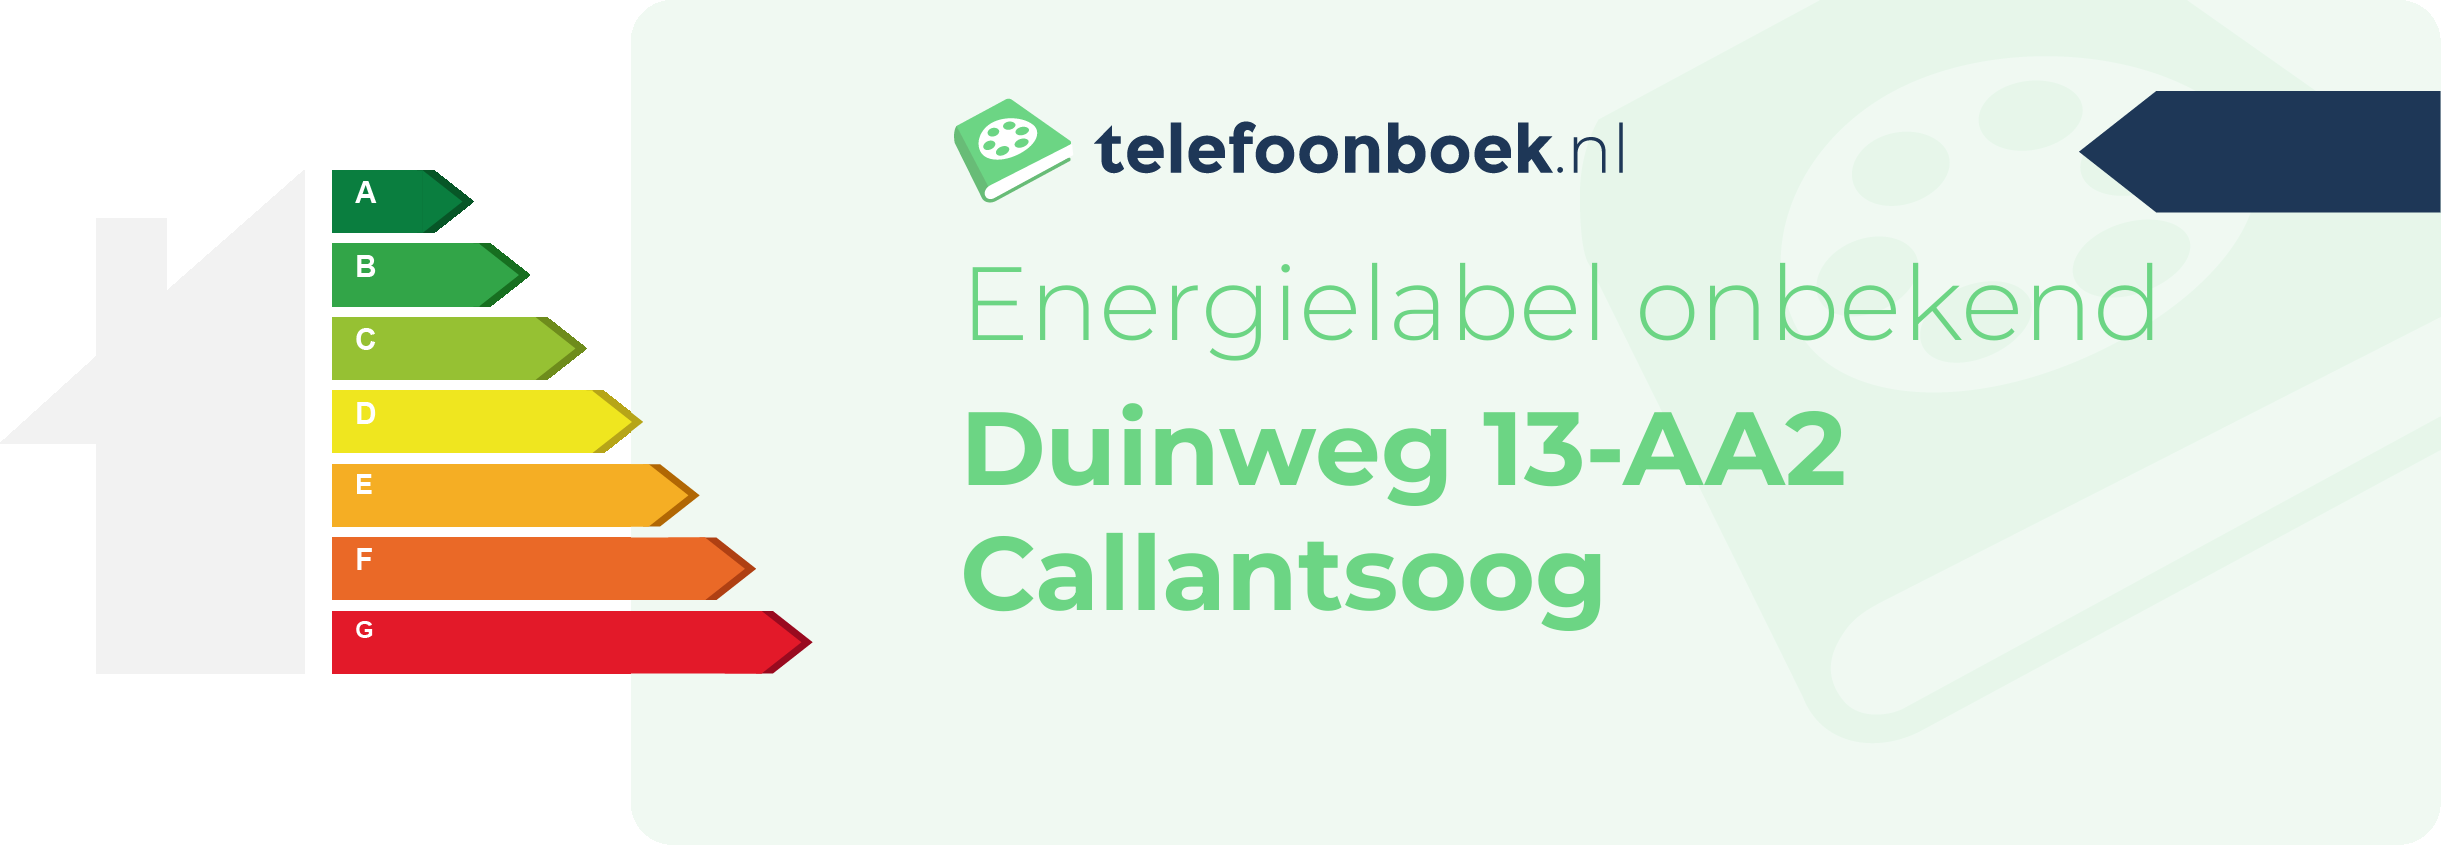 Energielabel Duinweg 13-AA2 Callantsoog